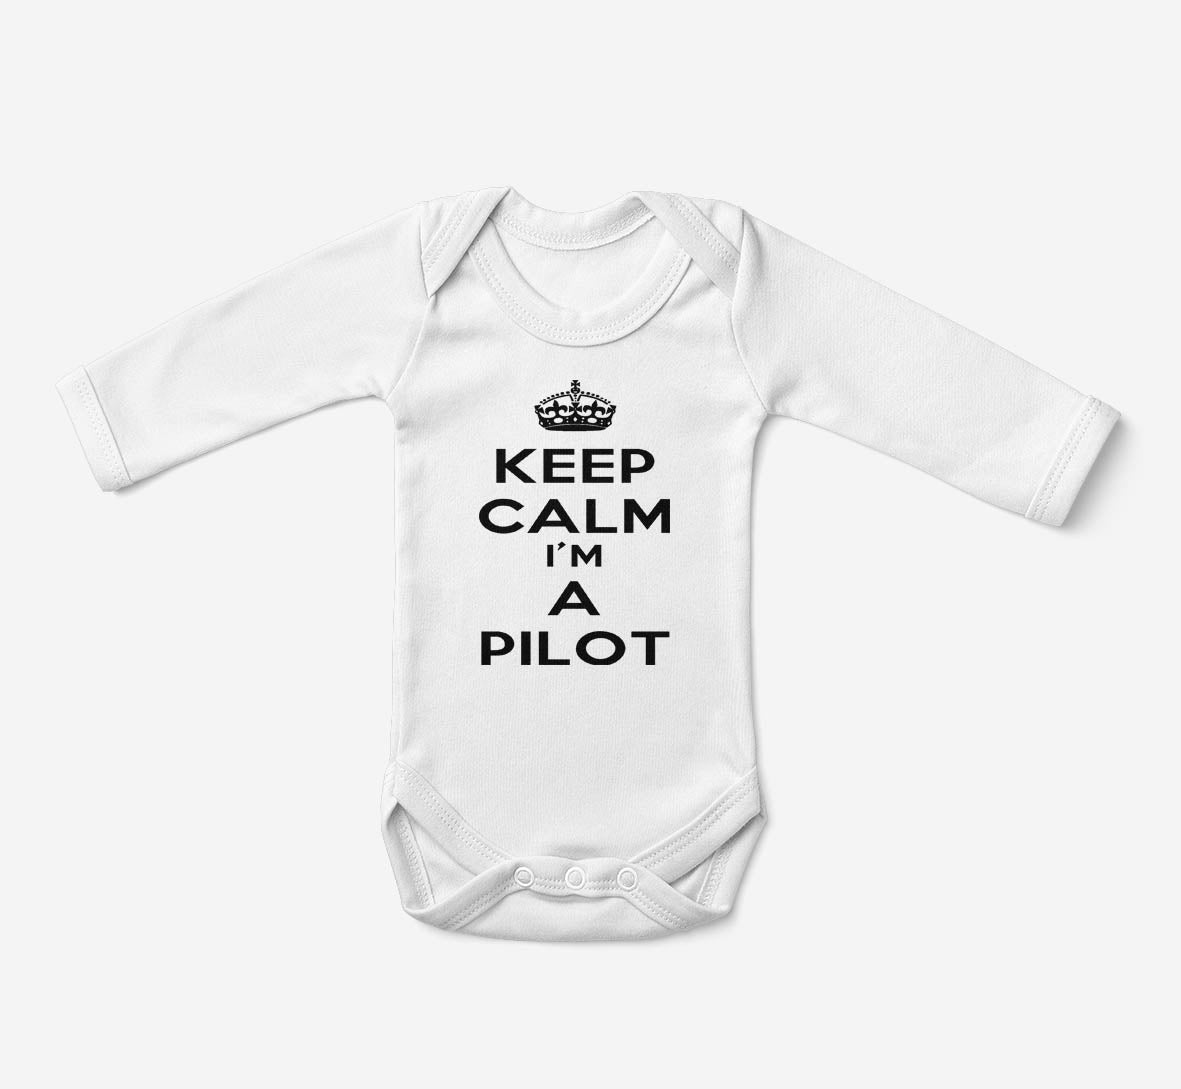 Keep Calm I'm a Pilot Designed Baby Bodysuits